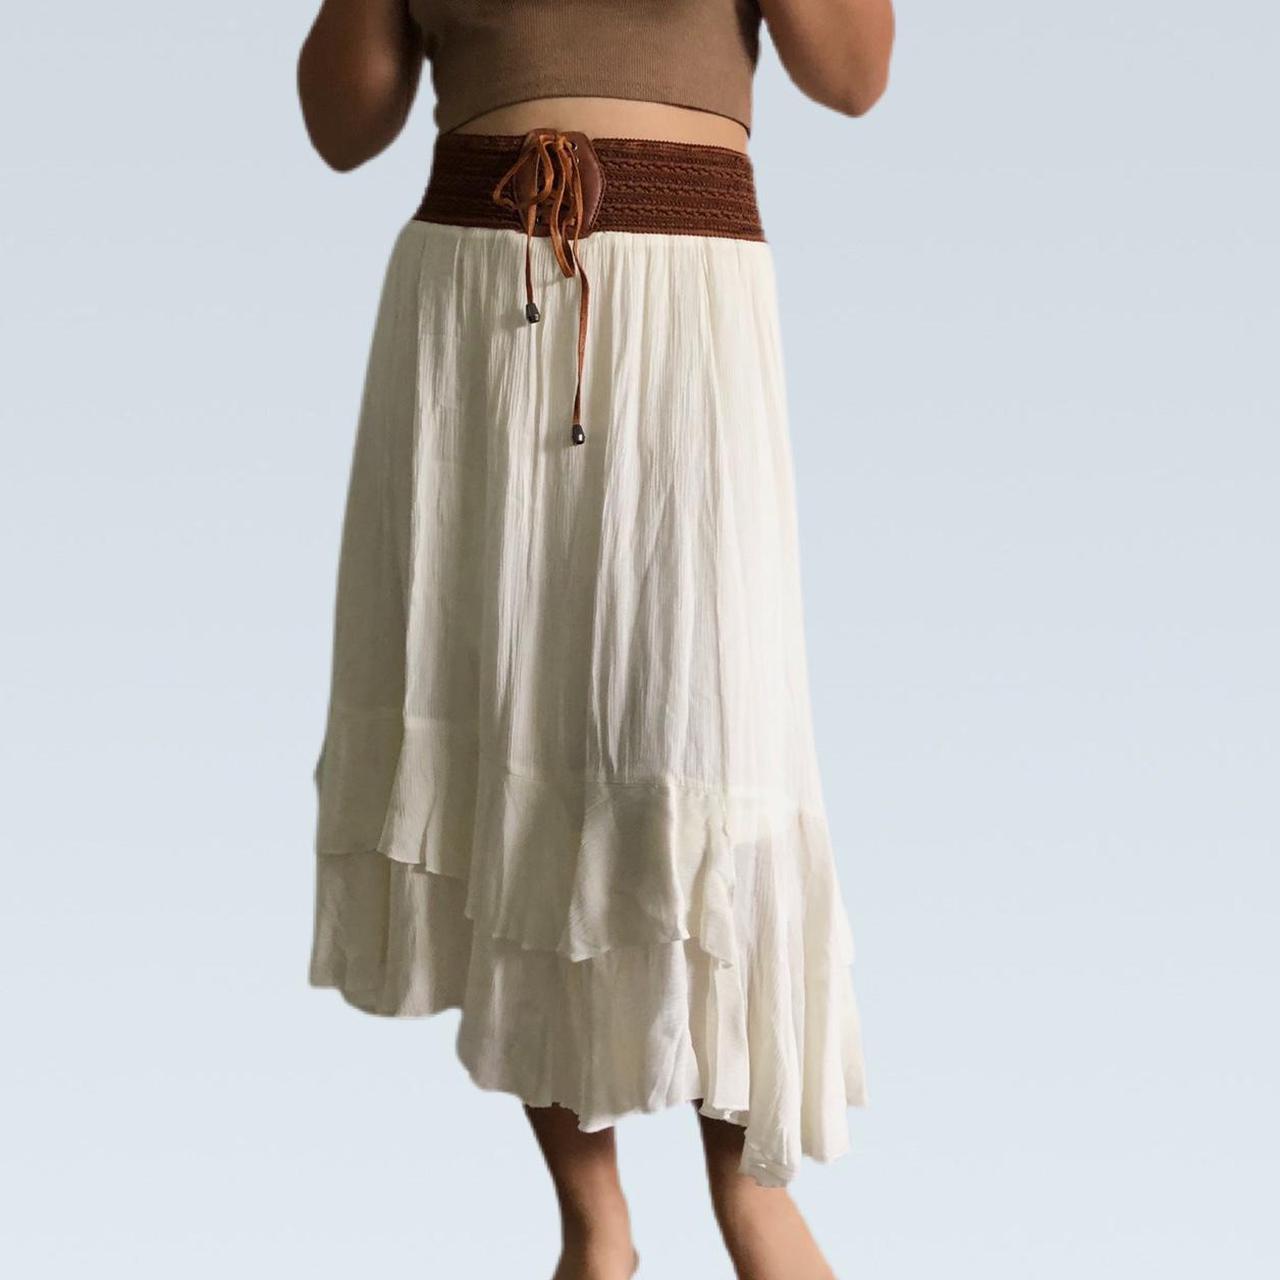 Women's Cream and Brown Skirt (2)